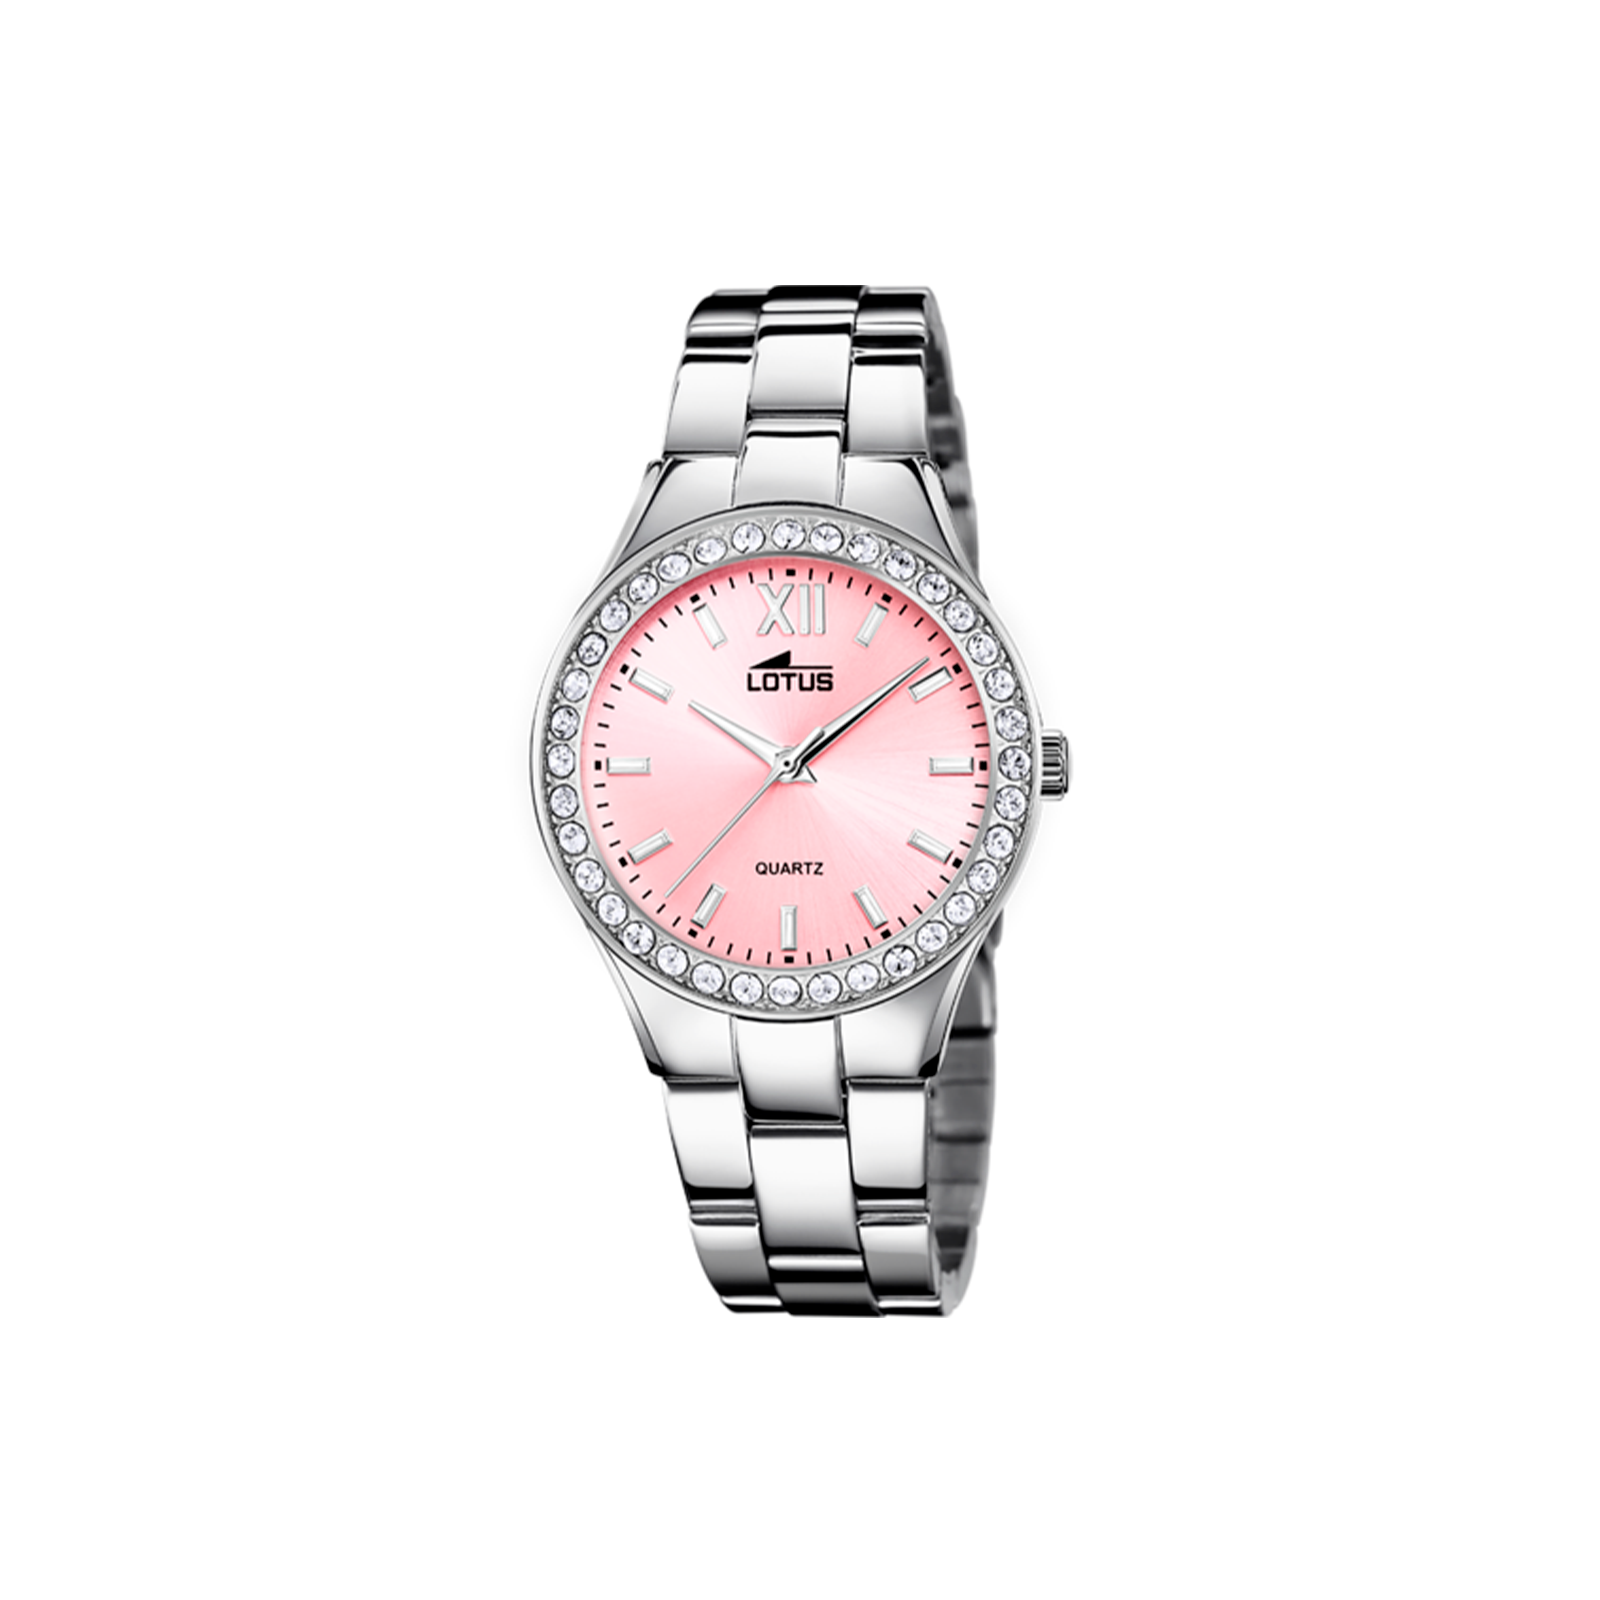 Comprar reloj Lotus mujer esfera rosa transparente. - Joyería Belén